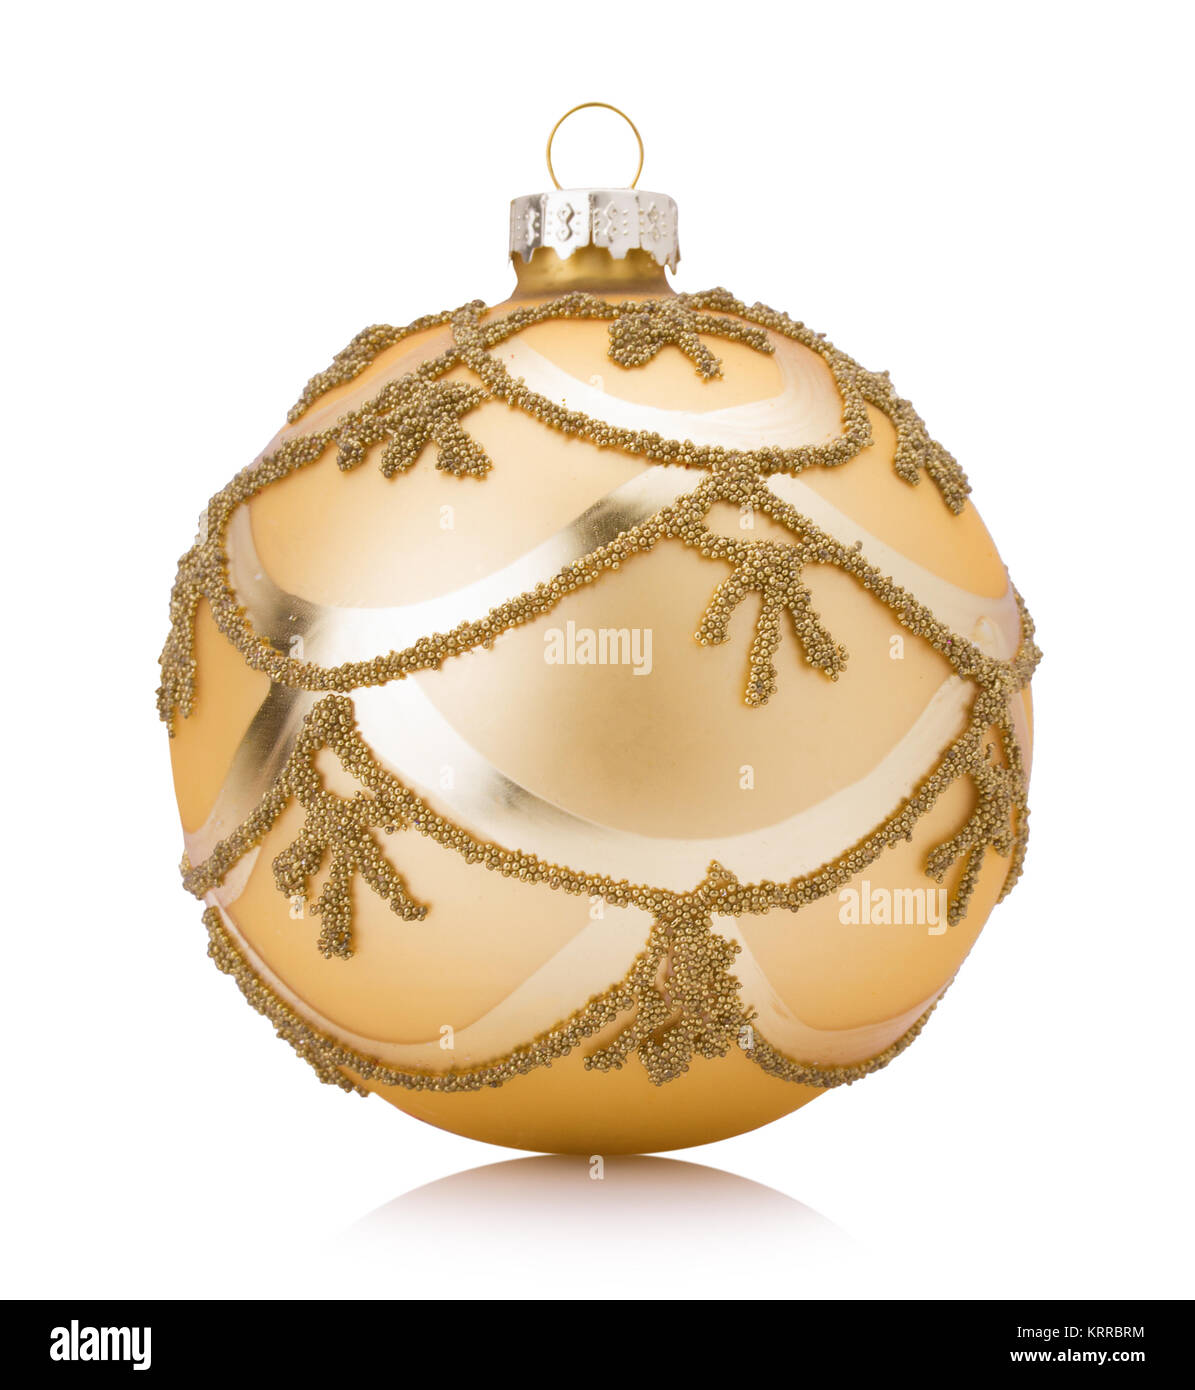 Goldenen Weihnachtsbaum Kugel auf einem weißen Hintergrund. Stockfoto